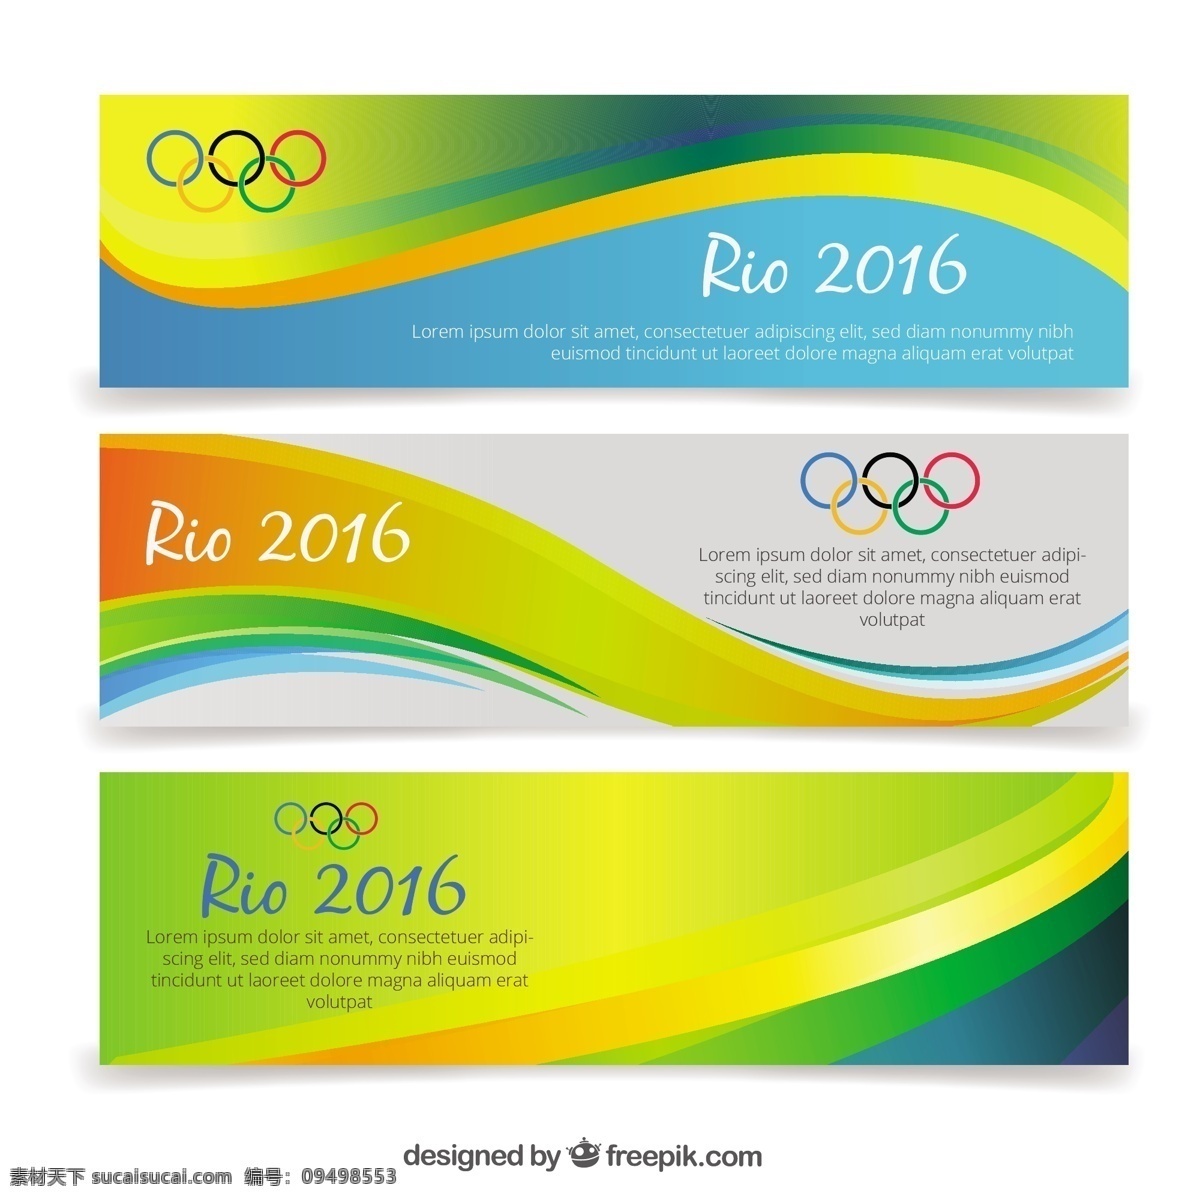 2016 奥运会 旗帜 精美 线条 矢量图 奥运会的旗帜 里约 巴西奥运会 里约热内卢 夏季奥运会 31 届 夏季 奥林匹克 背景 白色